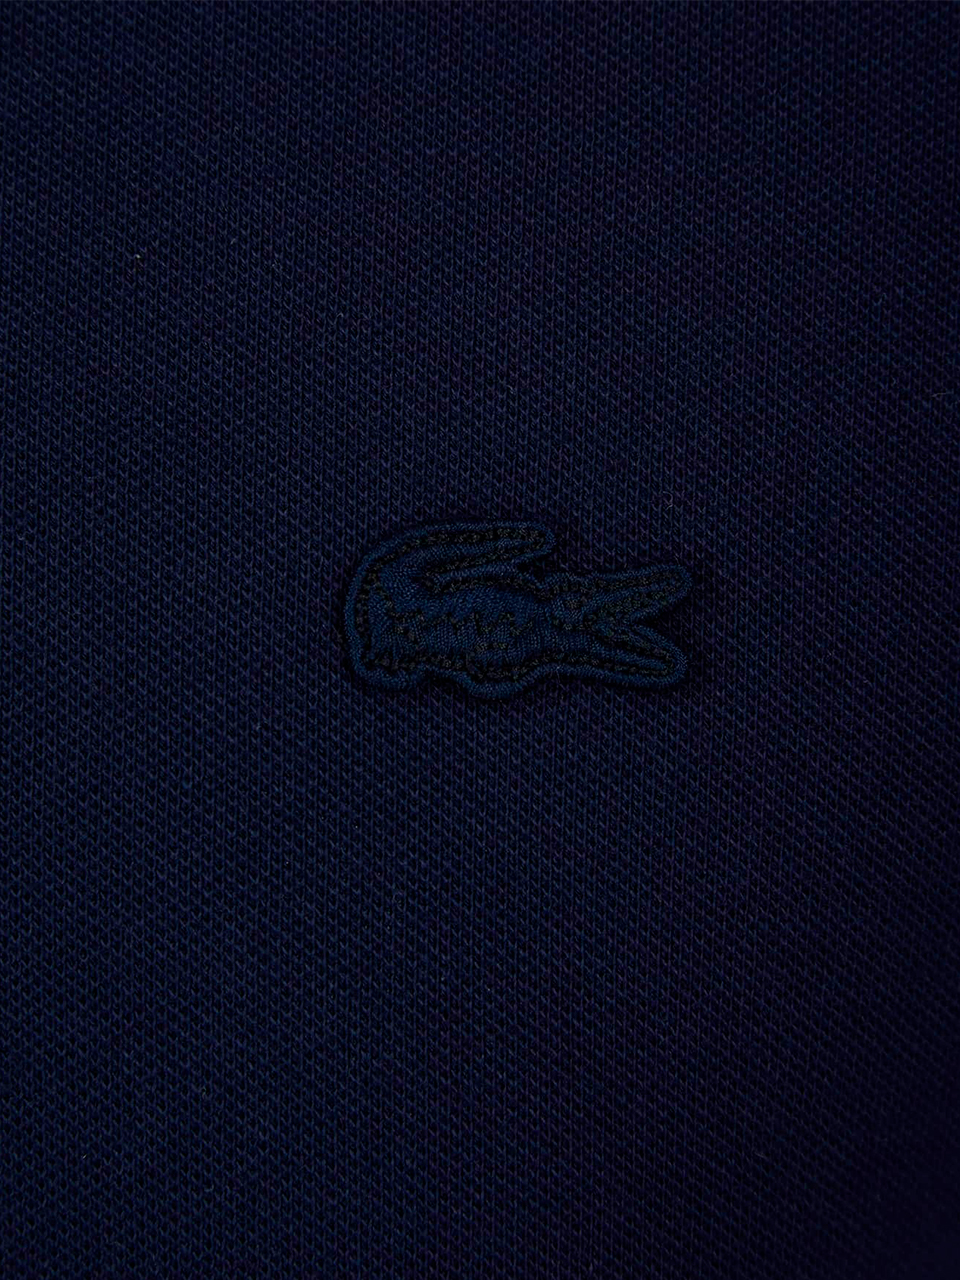 Imagem de: Camisa Polo Lacoste Azul Escuro